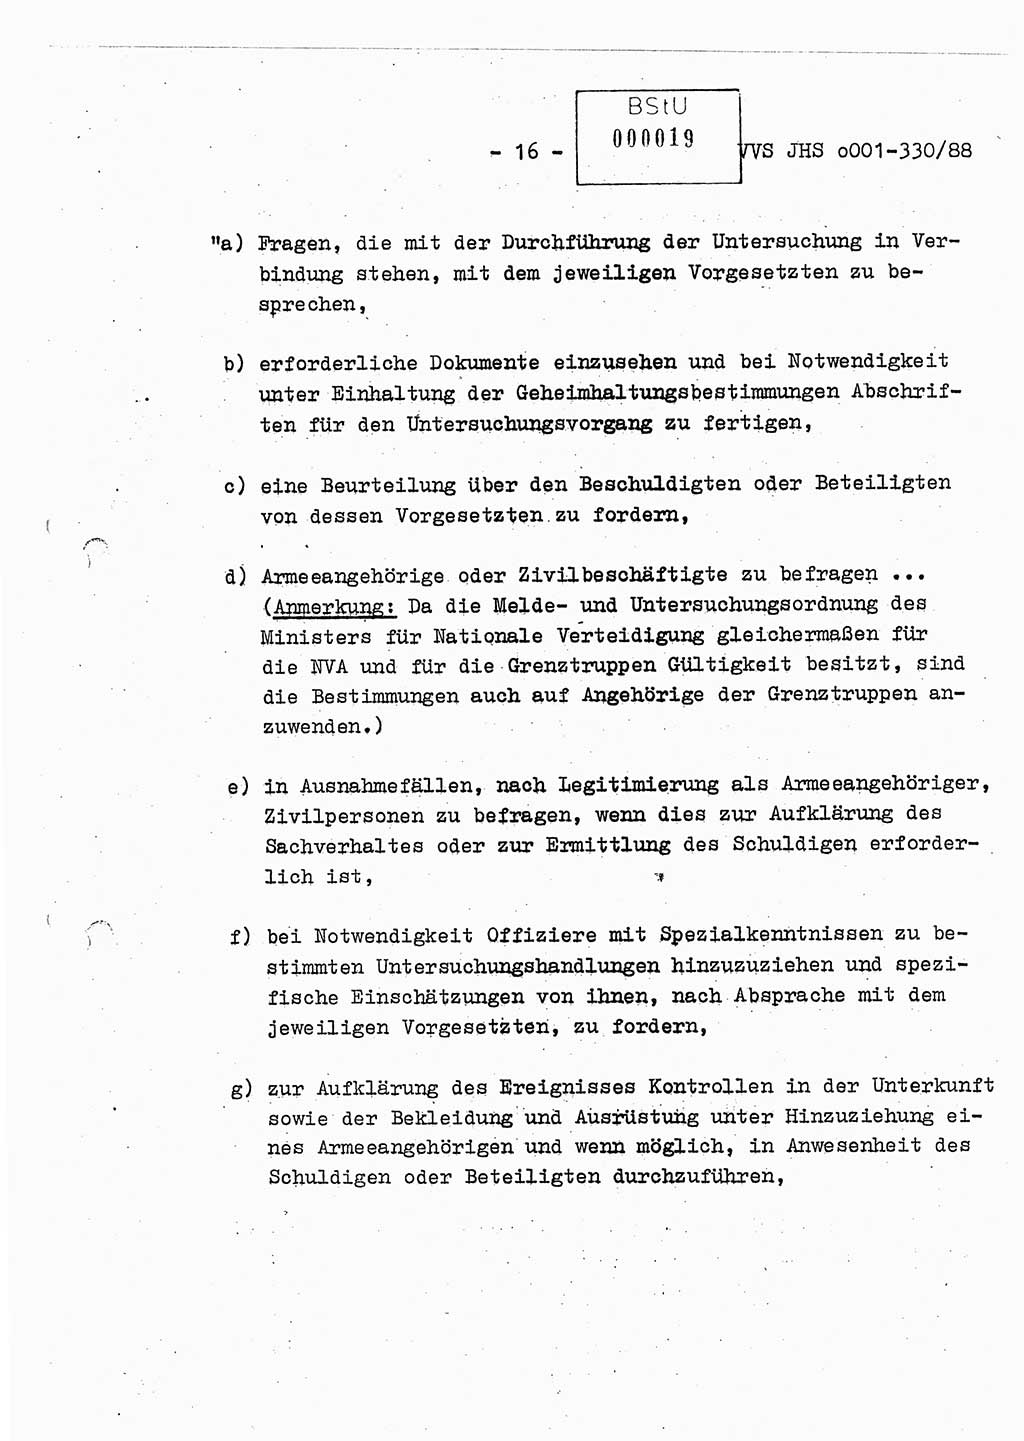 Diplomarbeit Offiziersschüler Thomas Mühle (HA Ⅸ/6), Ministerium für Staatssicherheit (MfS) [Deutsche Demokratische Republik (DDR)], Juristische Hochschule (JHS), Vertrauliche Verschlußsache (VVS) o001-330/88, Potsdam 1988, Seite 16 (Dipl.-Arb. MfS DDR JHS VVS o001-330/88 1988, S. 16)